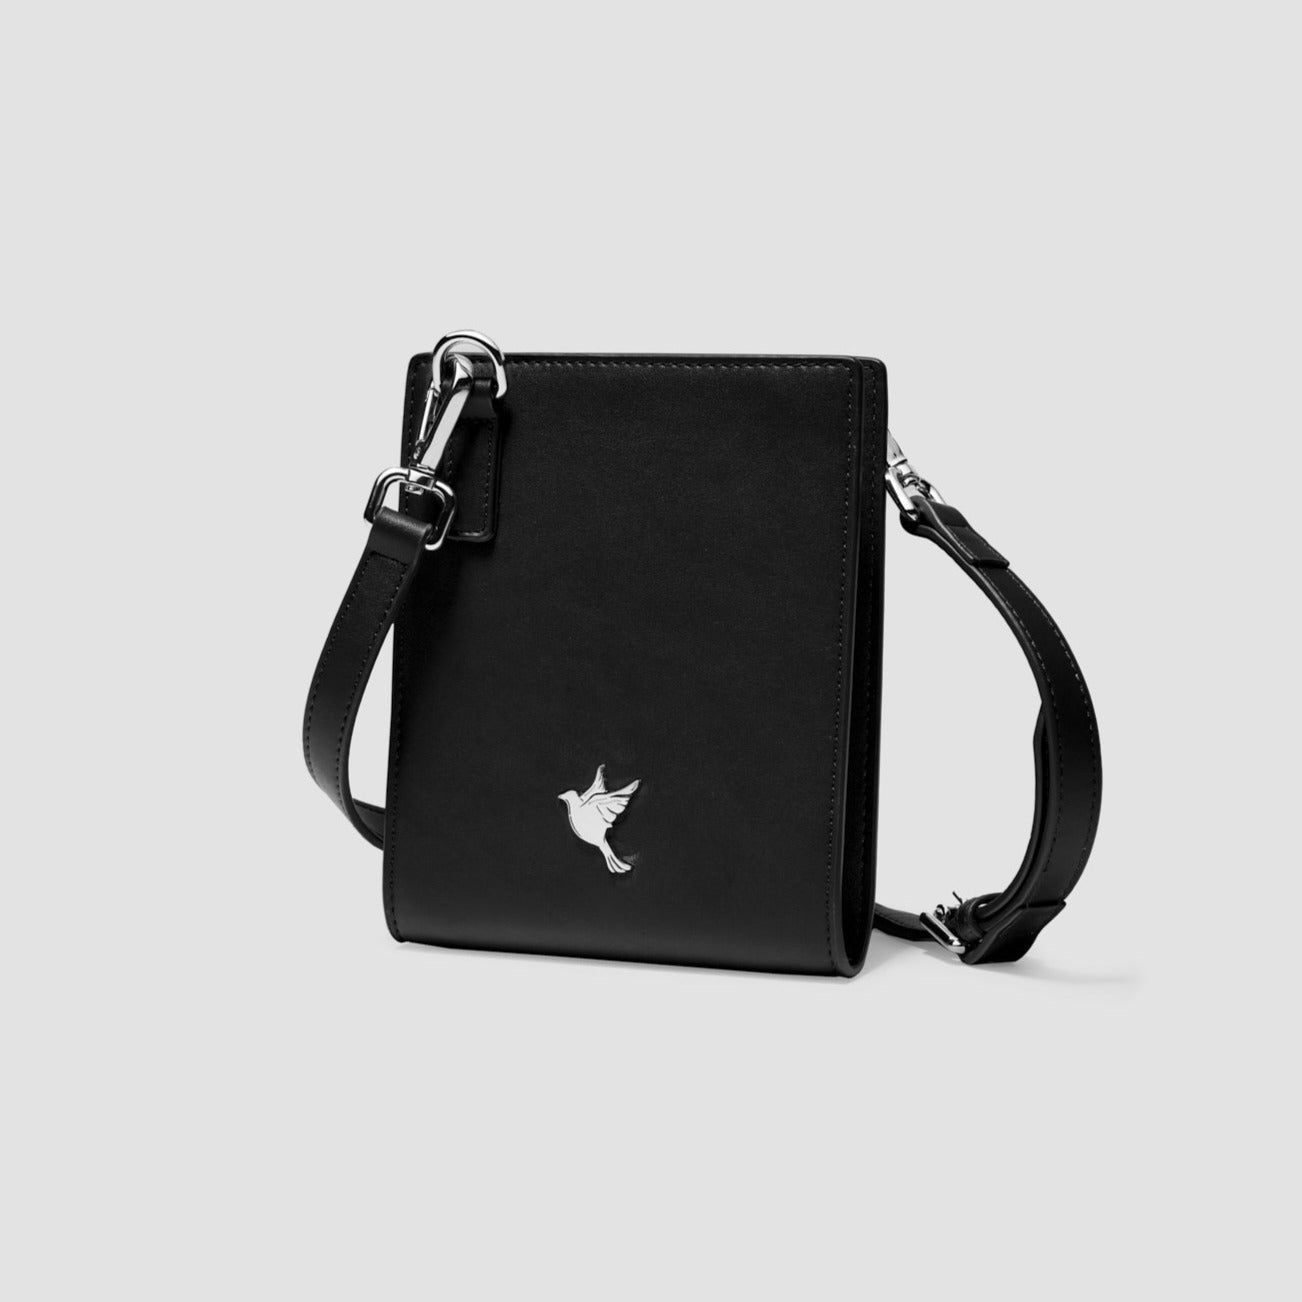 The Proper Cross Body Bag ™ Stylish Nero - The Proper Label ™